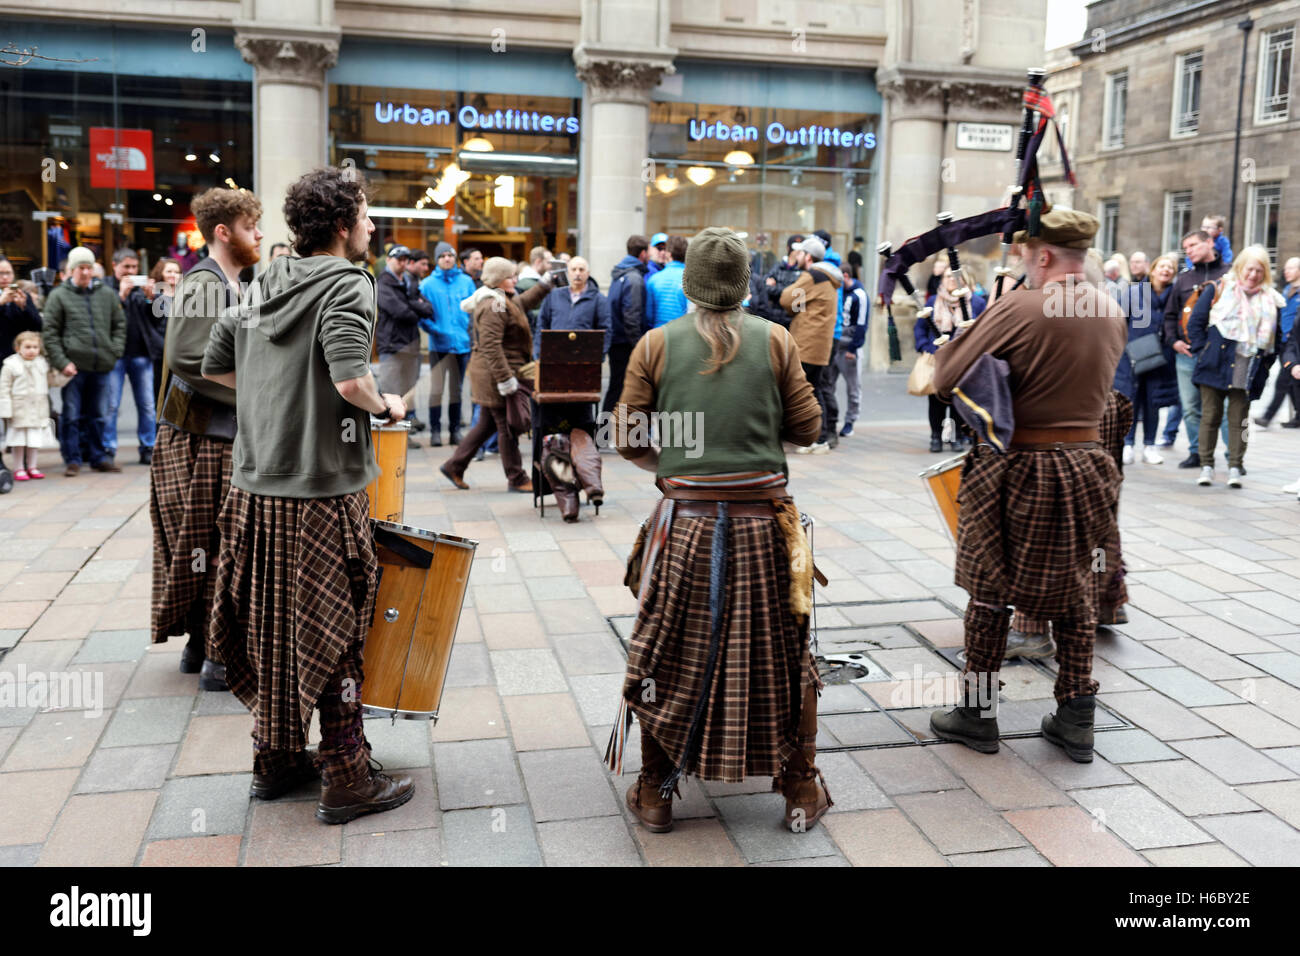 Tuyaux en kilt des musiciens de rue de la rue sur Sauchihall Street, Glasgow Banque D'Images